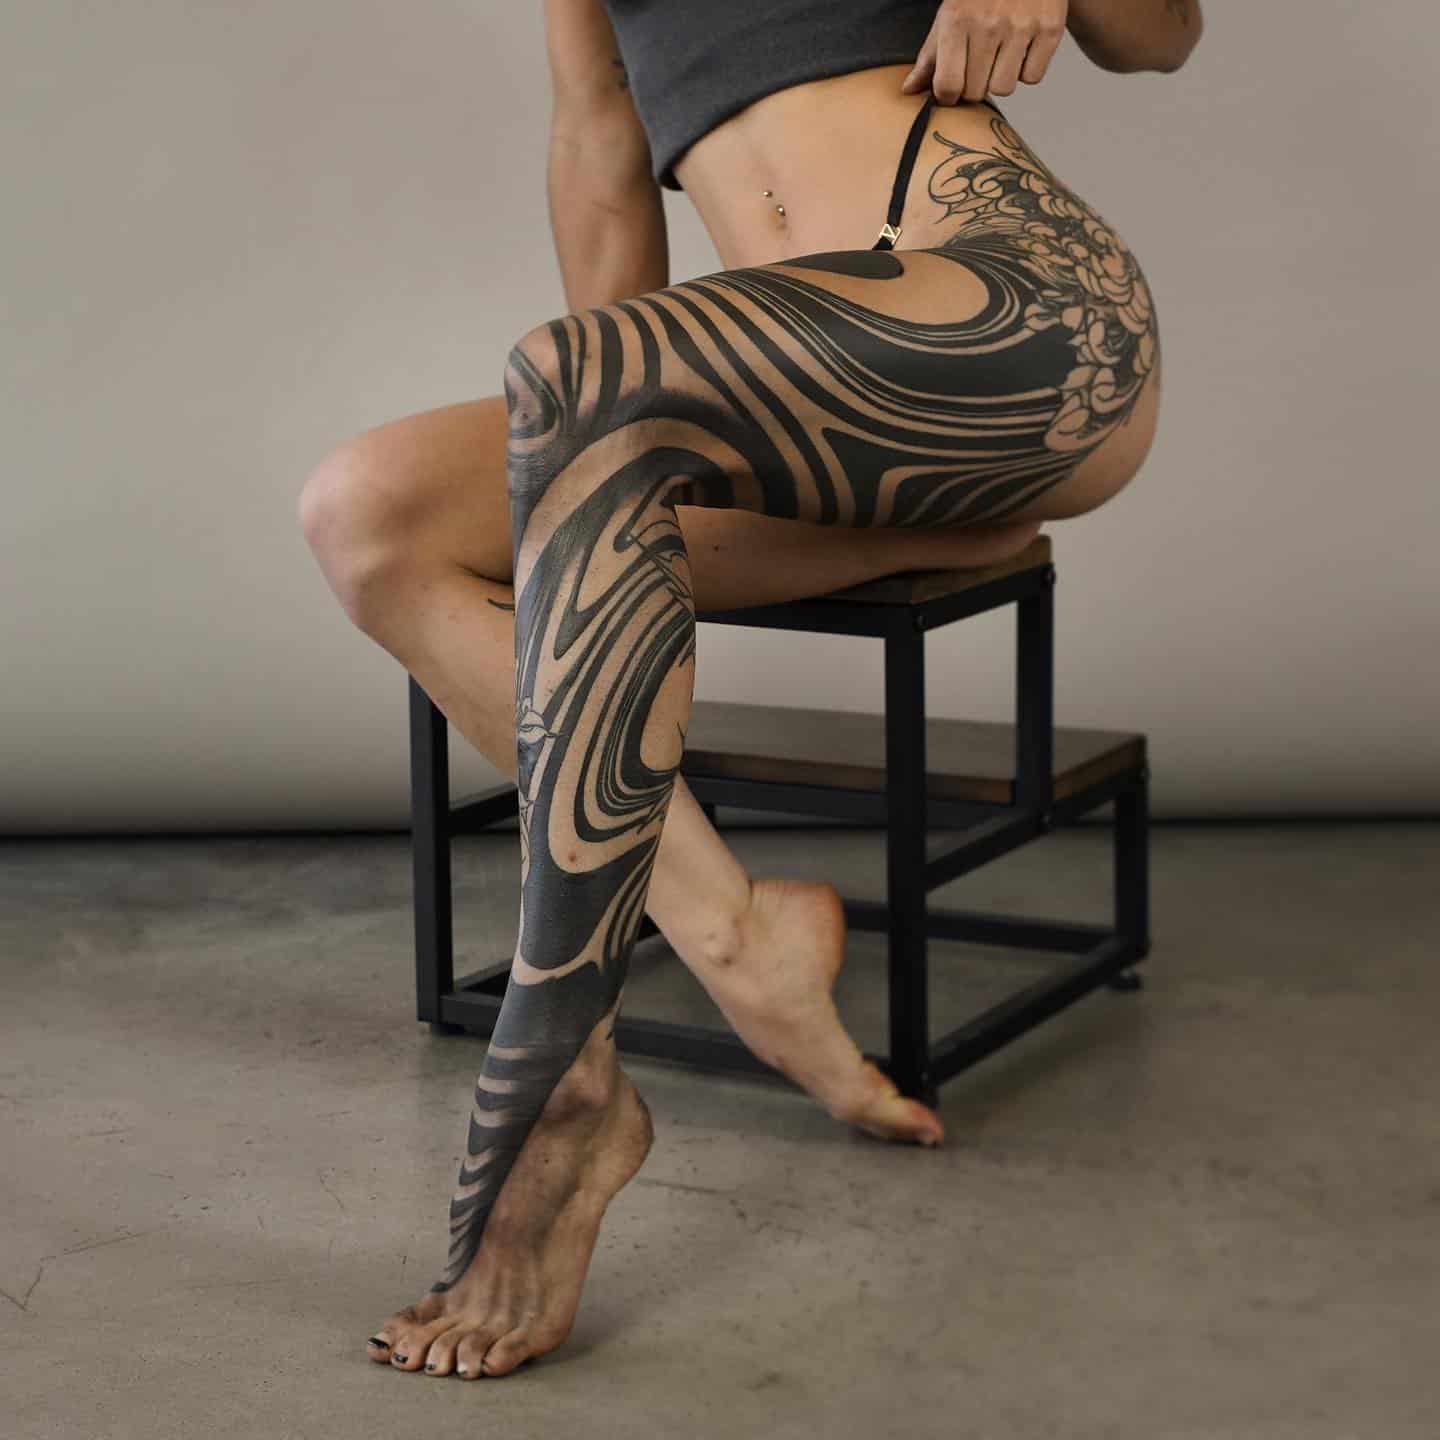 Wonderful abstract tattoo on full leg by orientedart